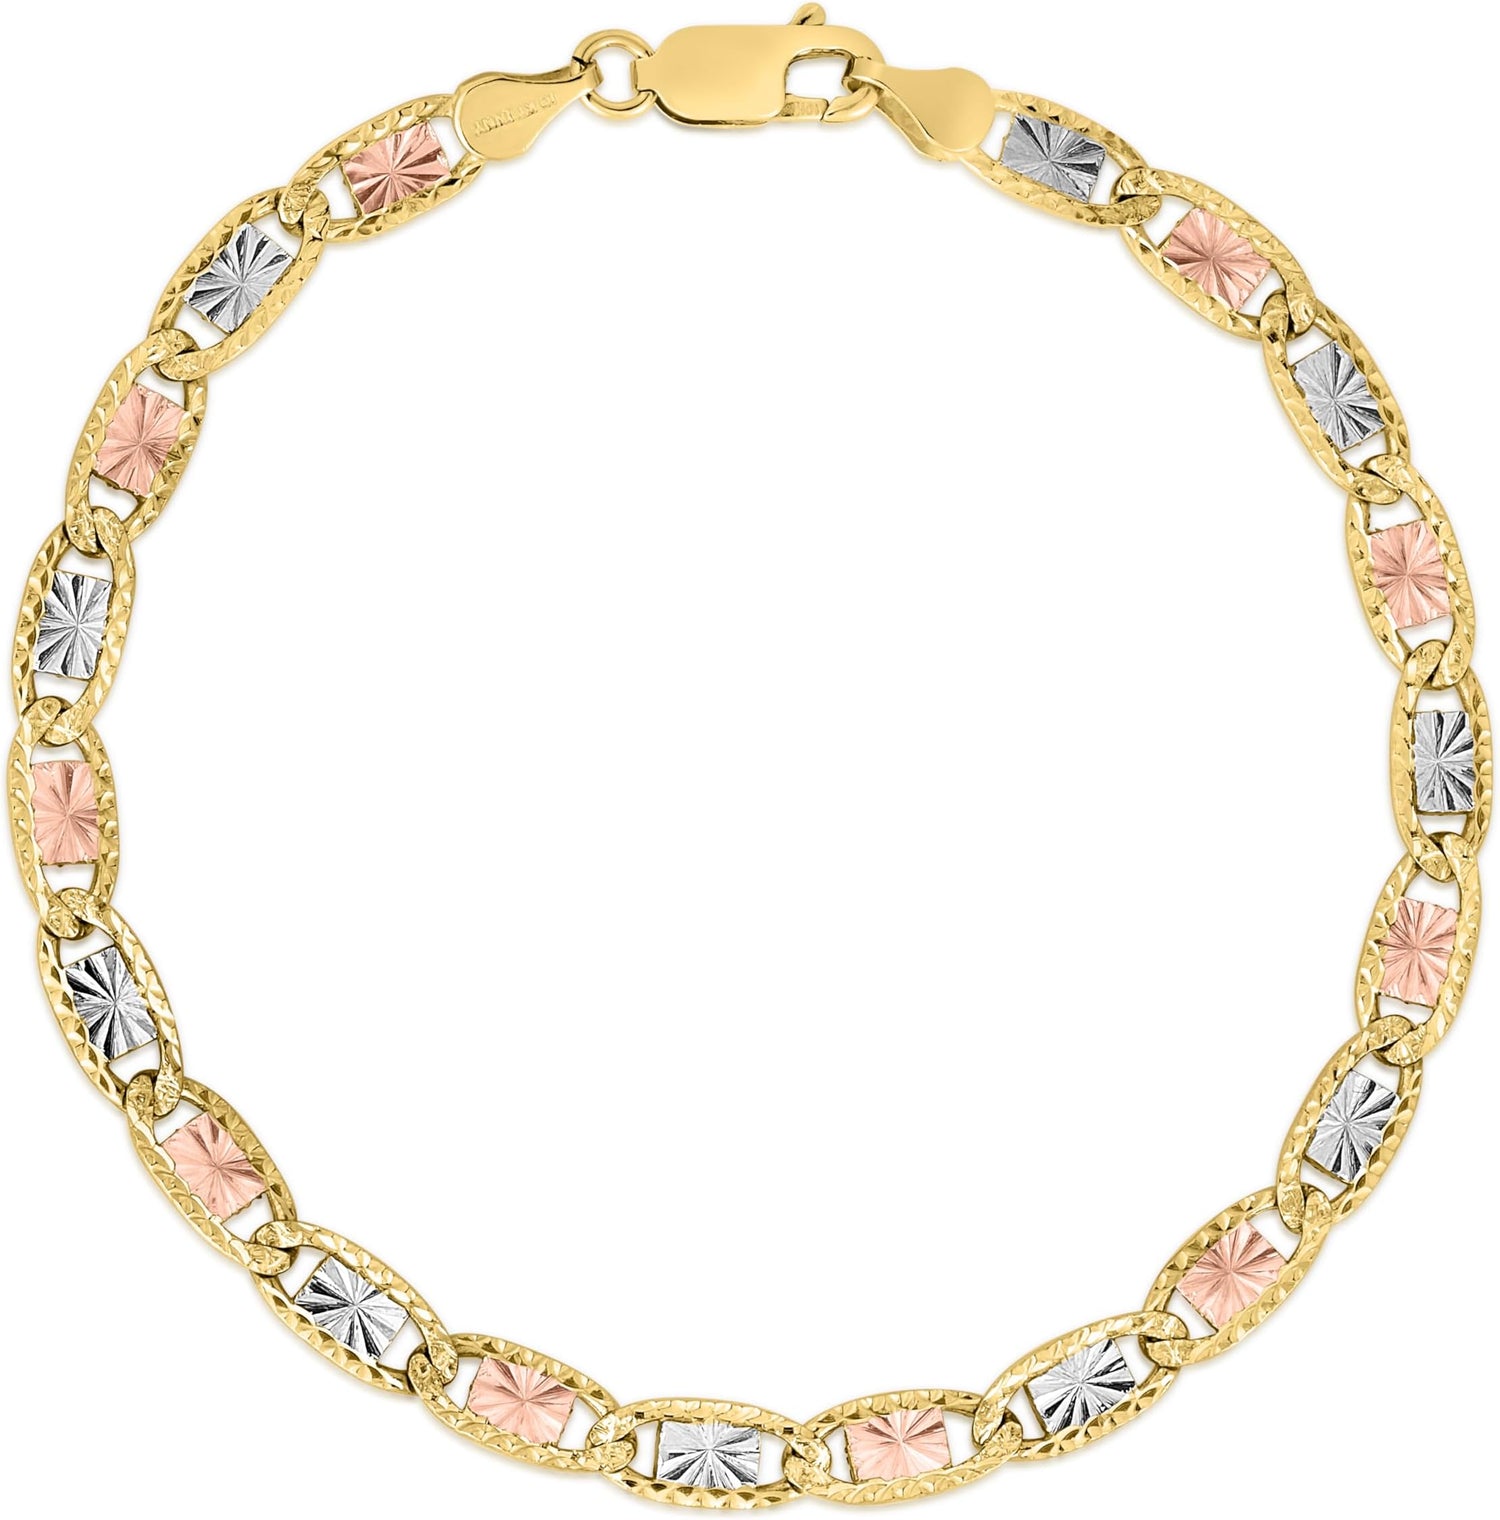 10k Tri-Color Gold 4.2mm Valentino Link Chain Bracelet or Anklet